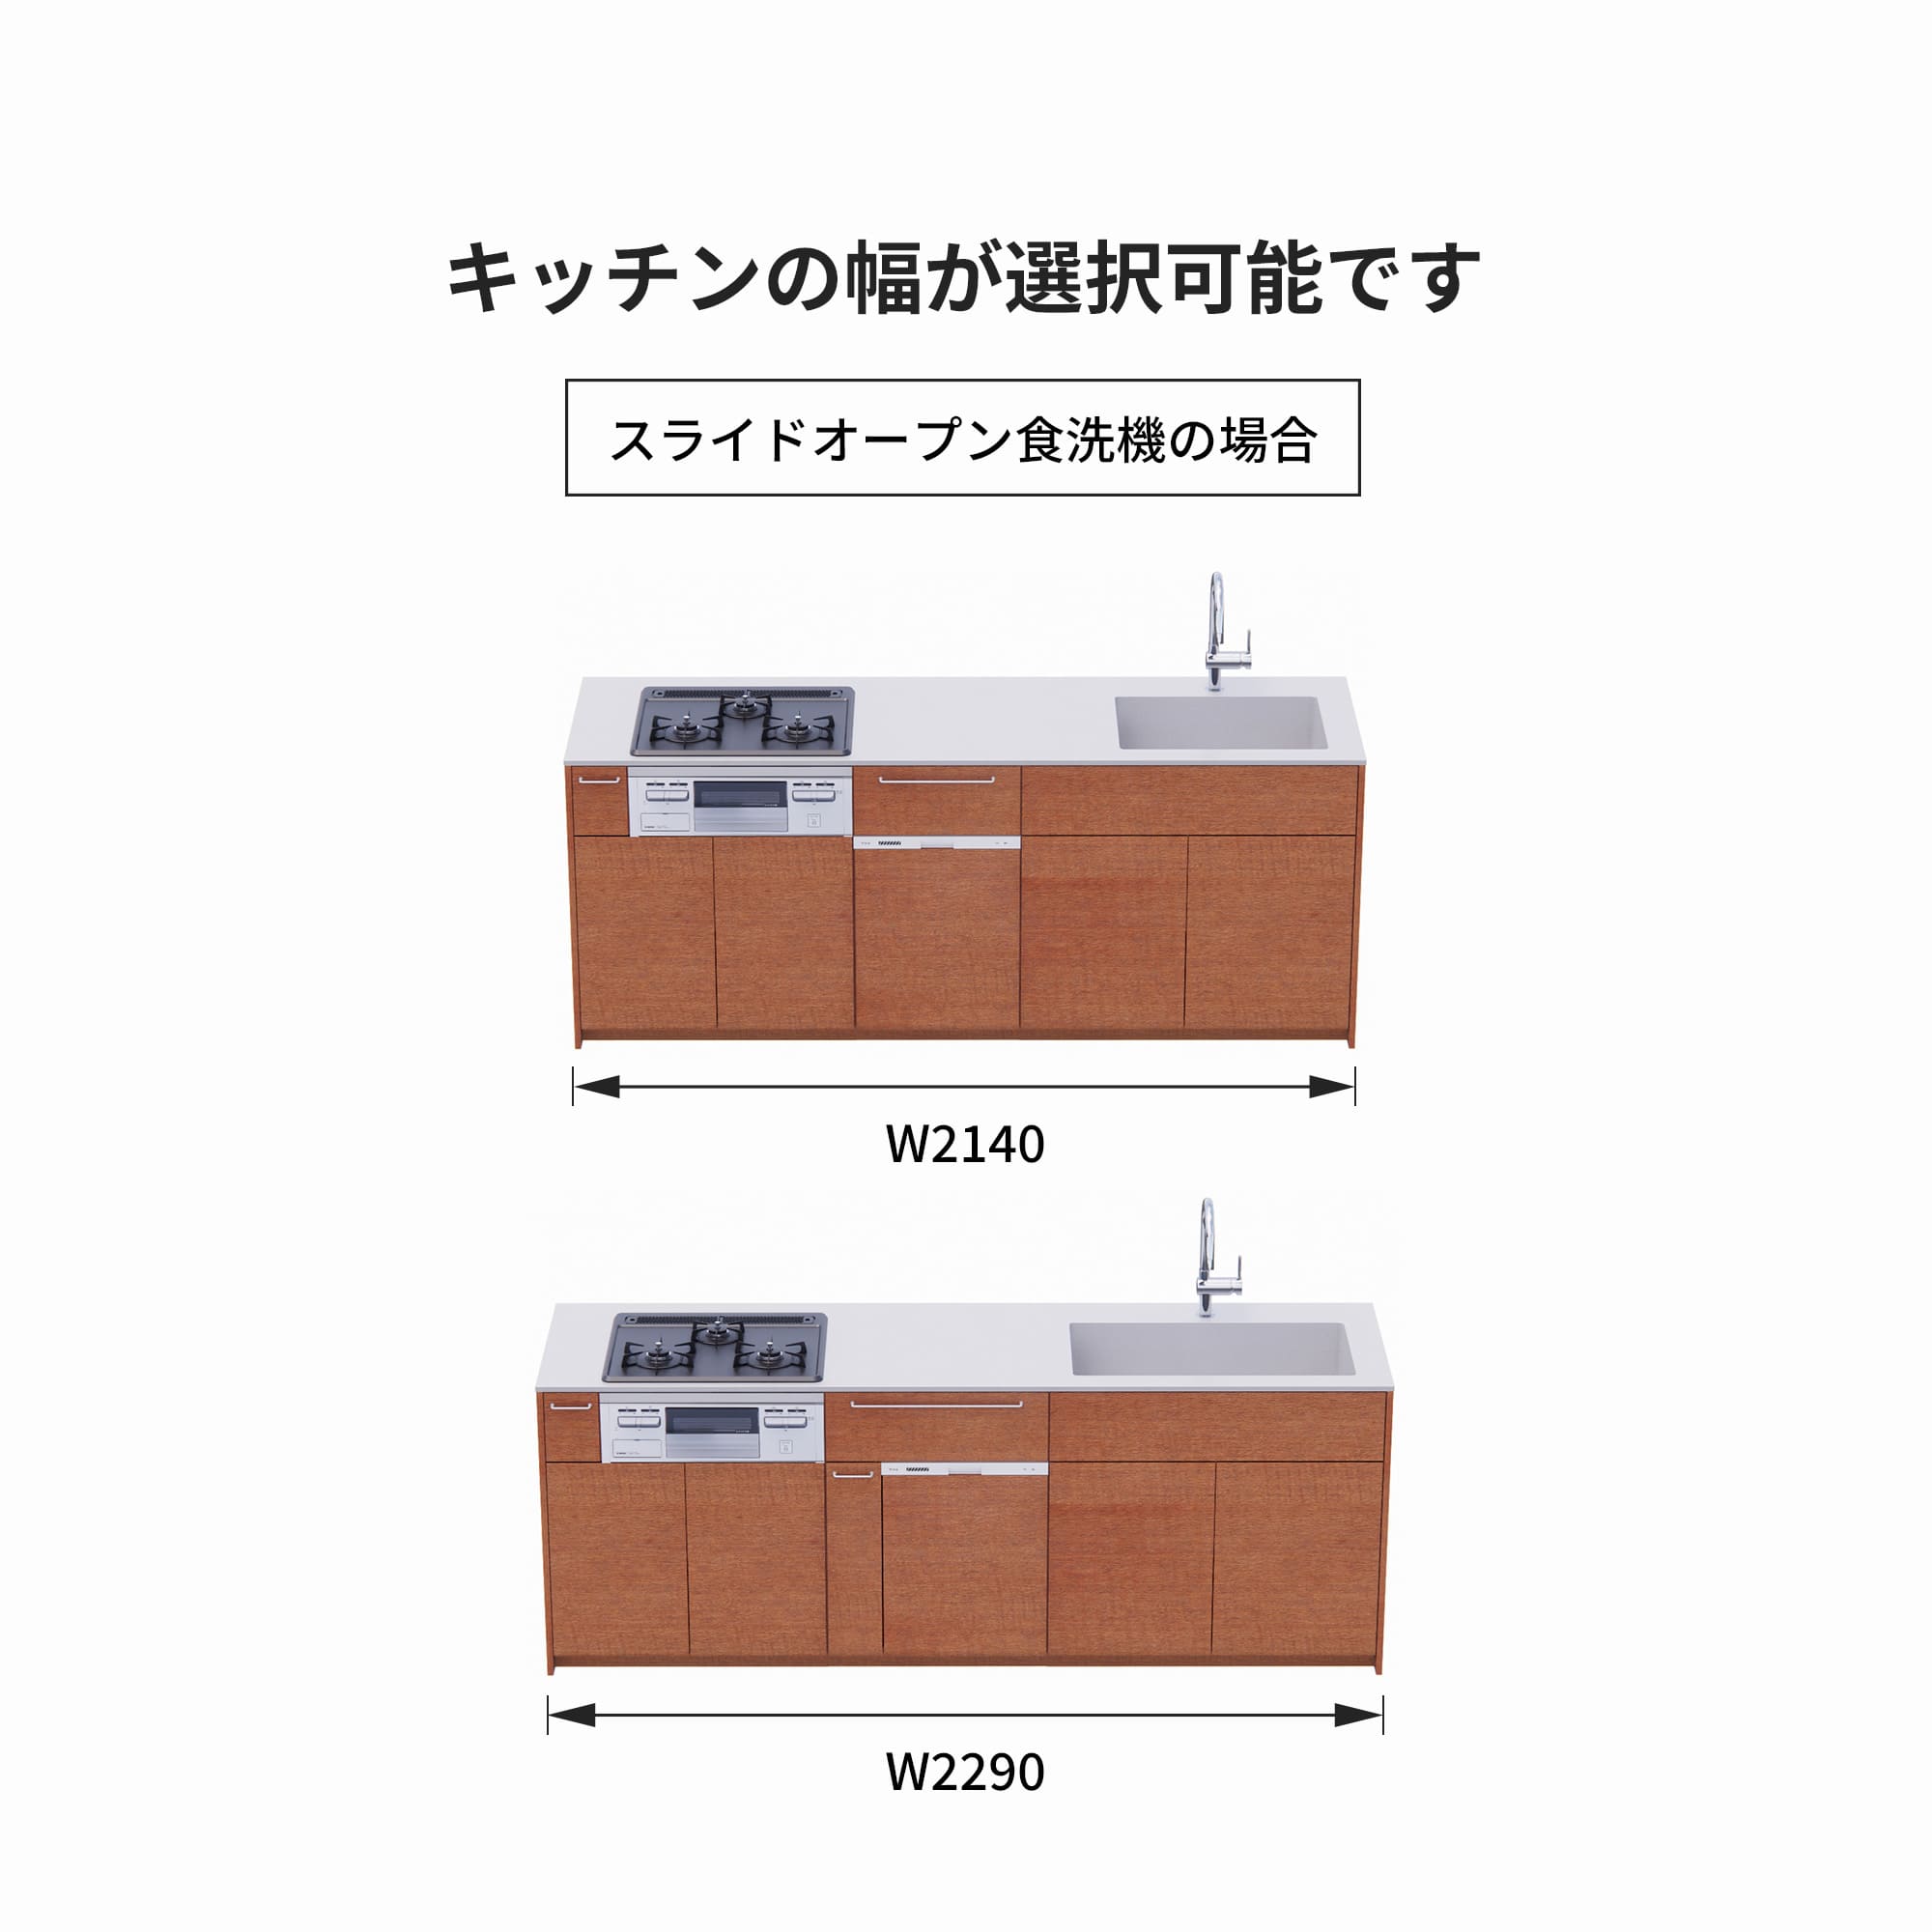 木製システムキッチン 対面型 W2140～2290・コンロあり / オーブンなし / 食洗機あり KB-KC022-38-G183 スライドオープンの場合